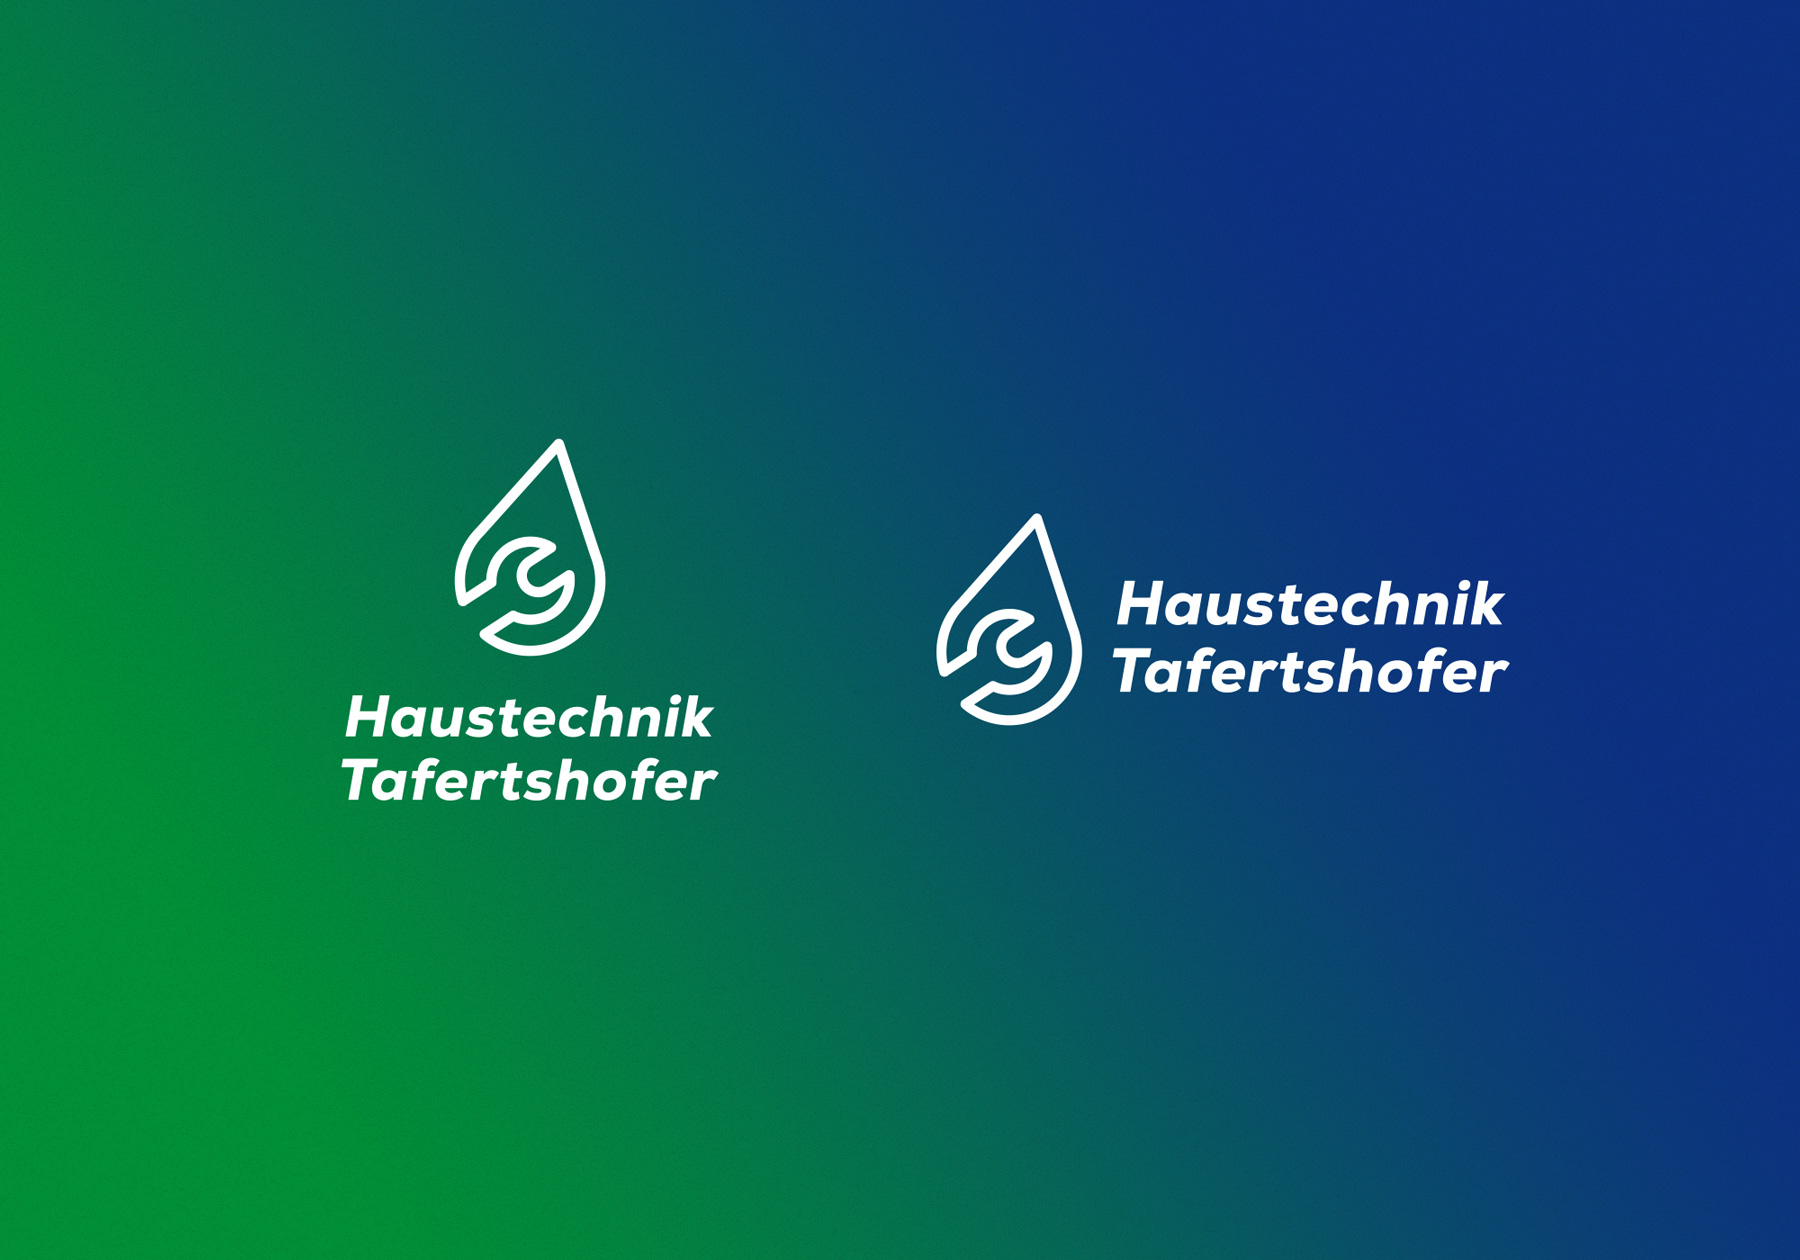 Corporate Design Tafertshofer Haustechnik